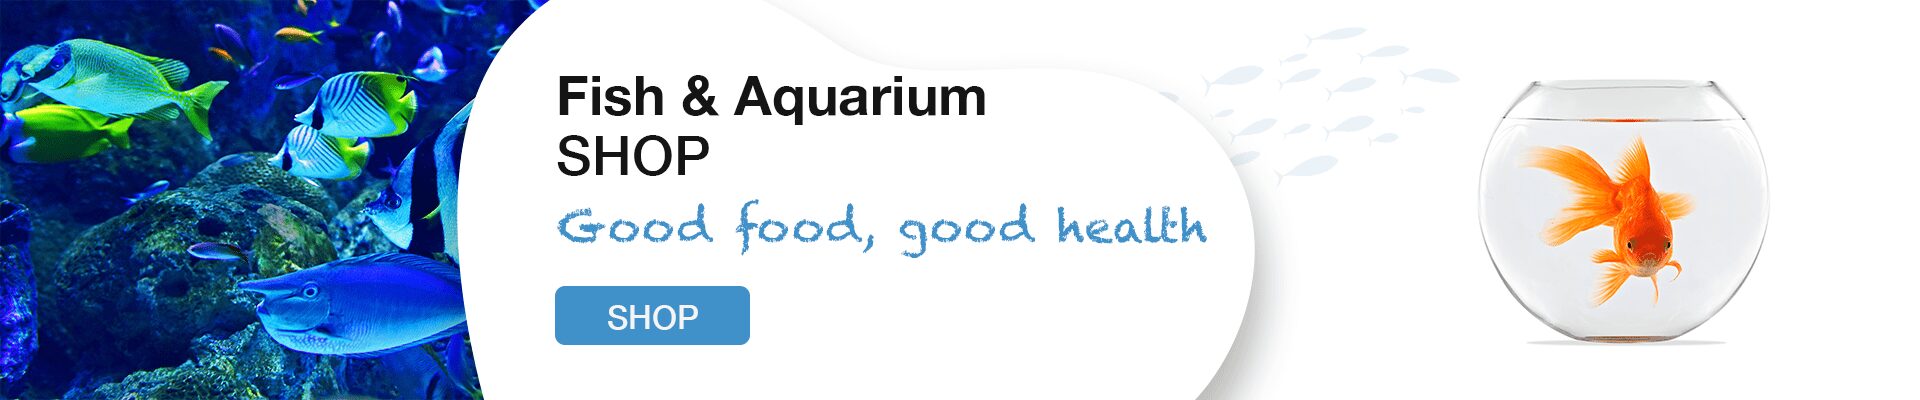 Fish & Aquarium